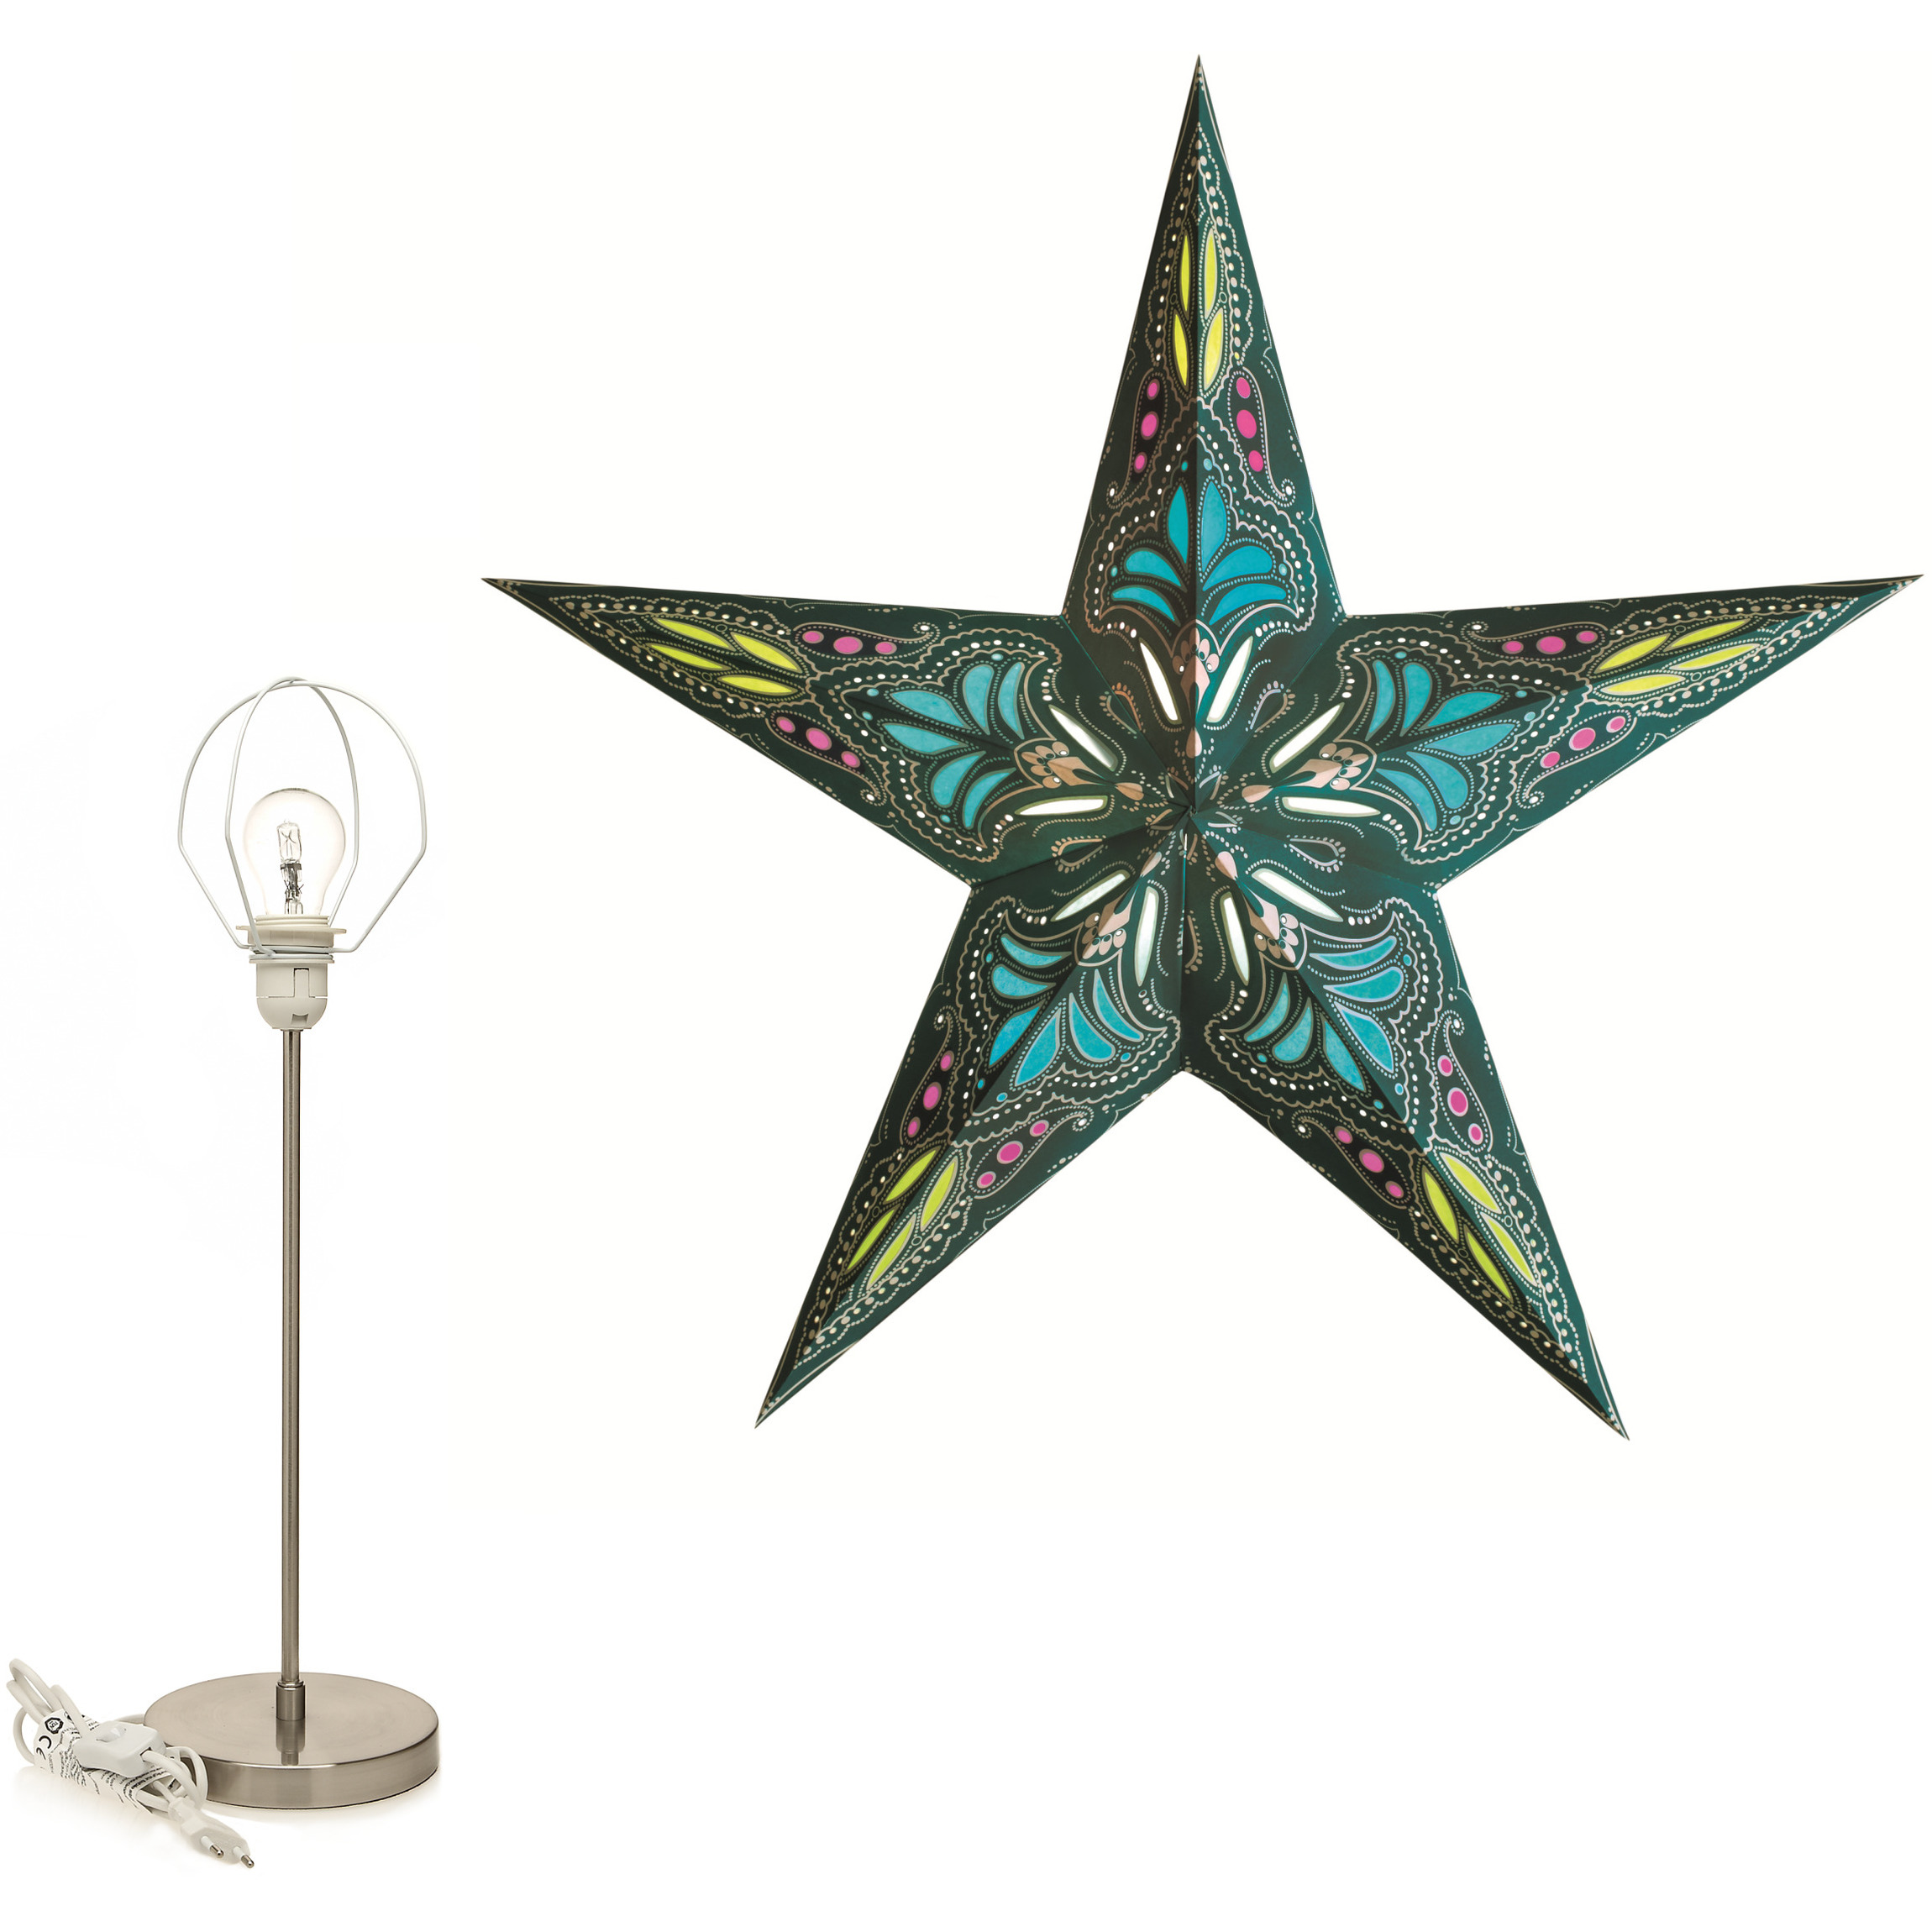 Decoratie kerstster turquoise/blauw 60 cm inclusief tafellamp/lamp standaard